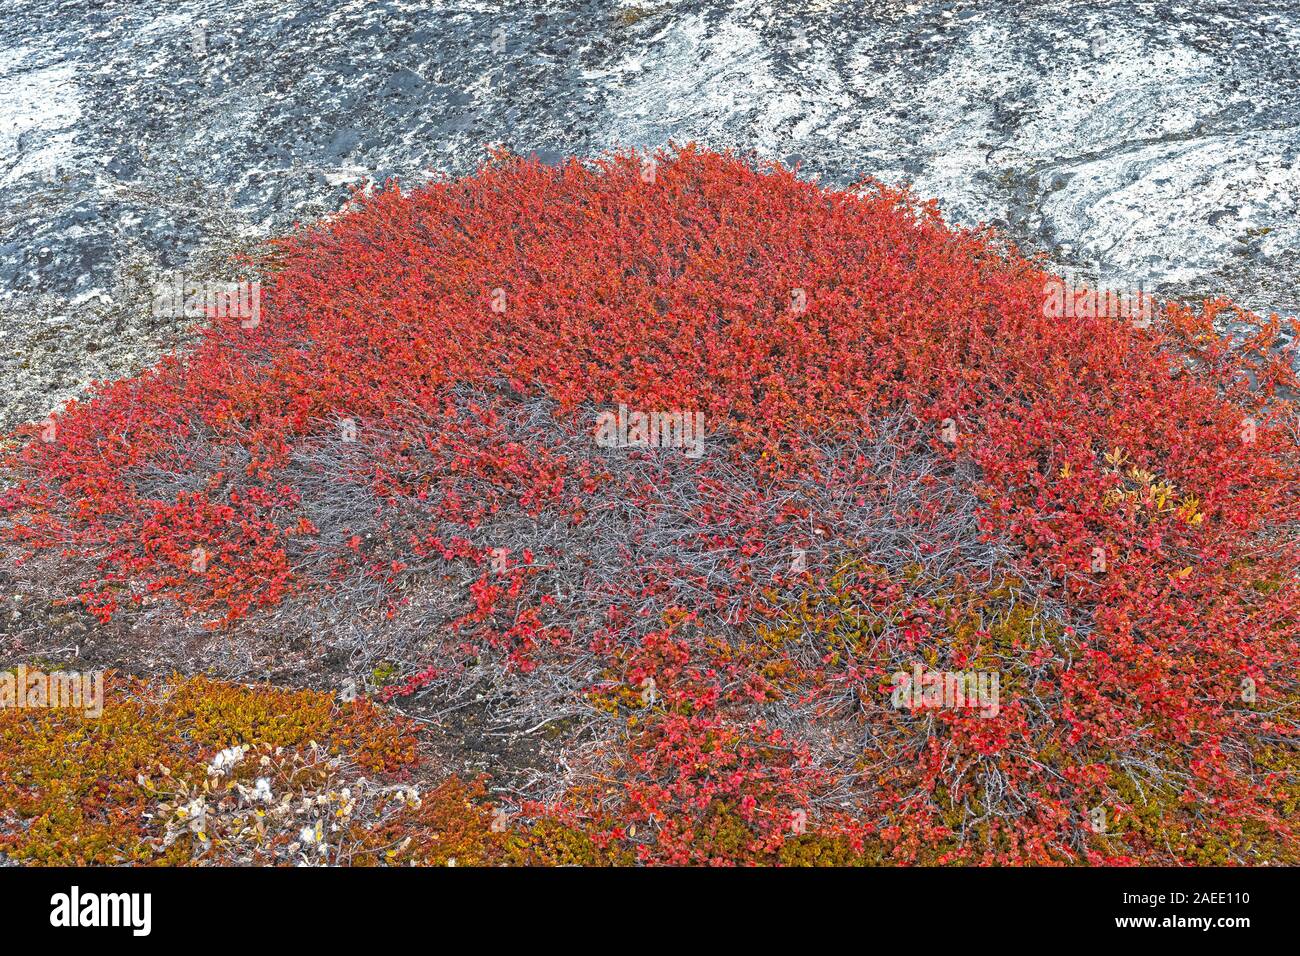 Tundra Pflanzen im Herbst Farben in der Arktis durch den Eisfjord Ilulissat, Grönland Stockfoto